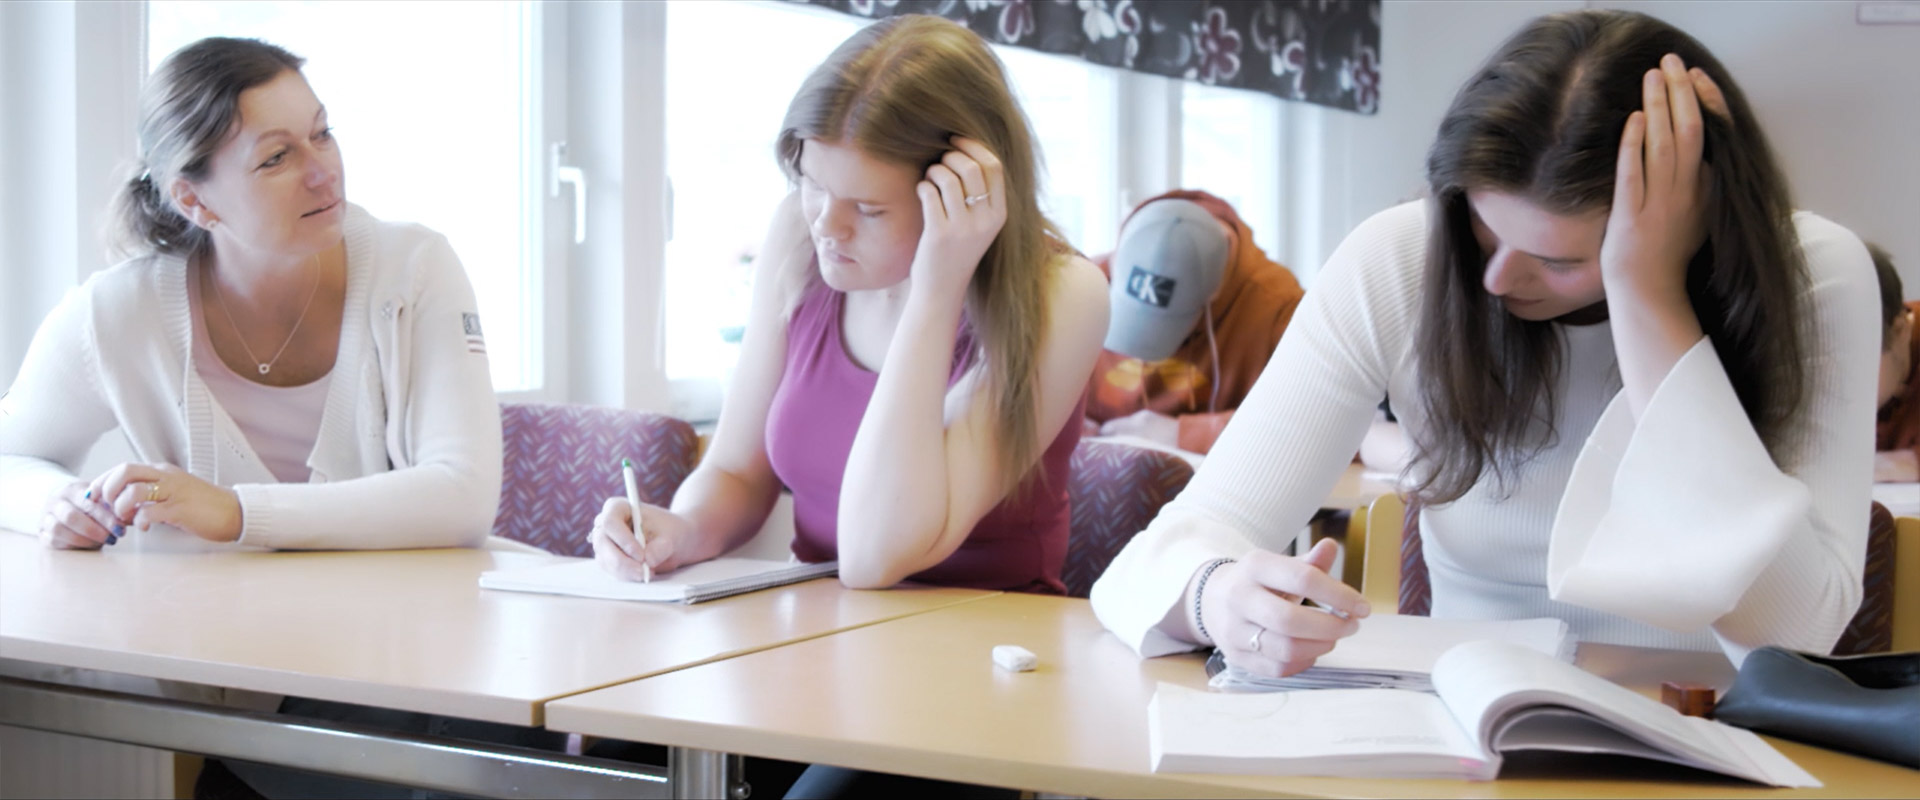 Elevassistentutbildning. Bild som visar en elevassistent som sitter brevid två deltagare.